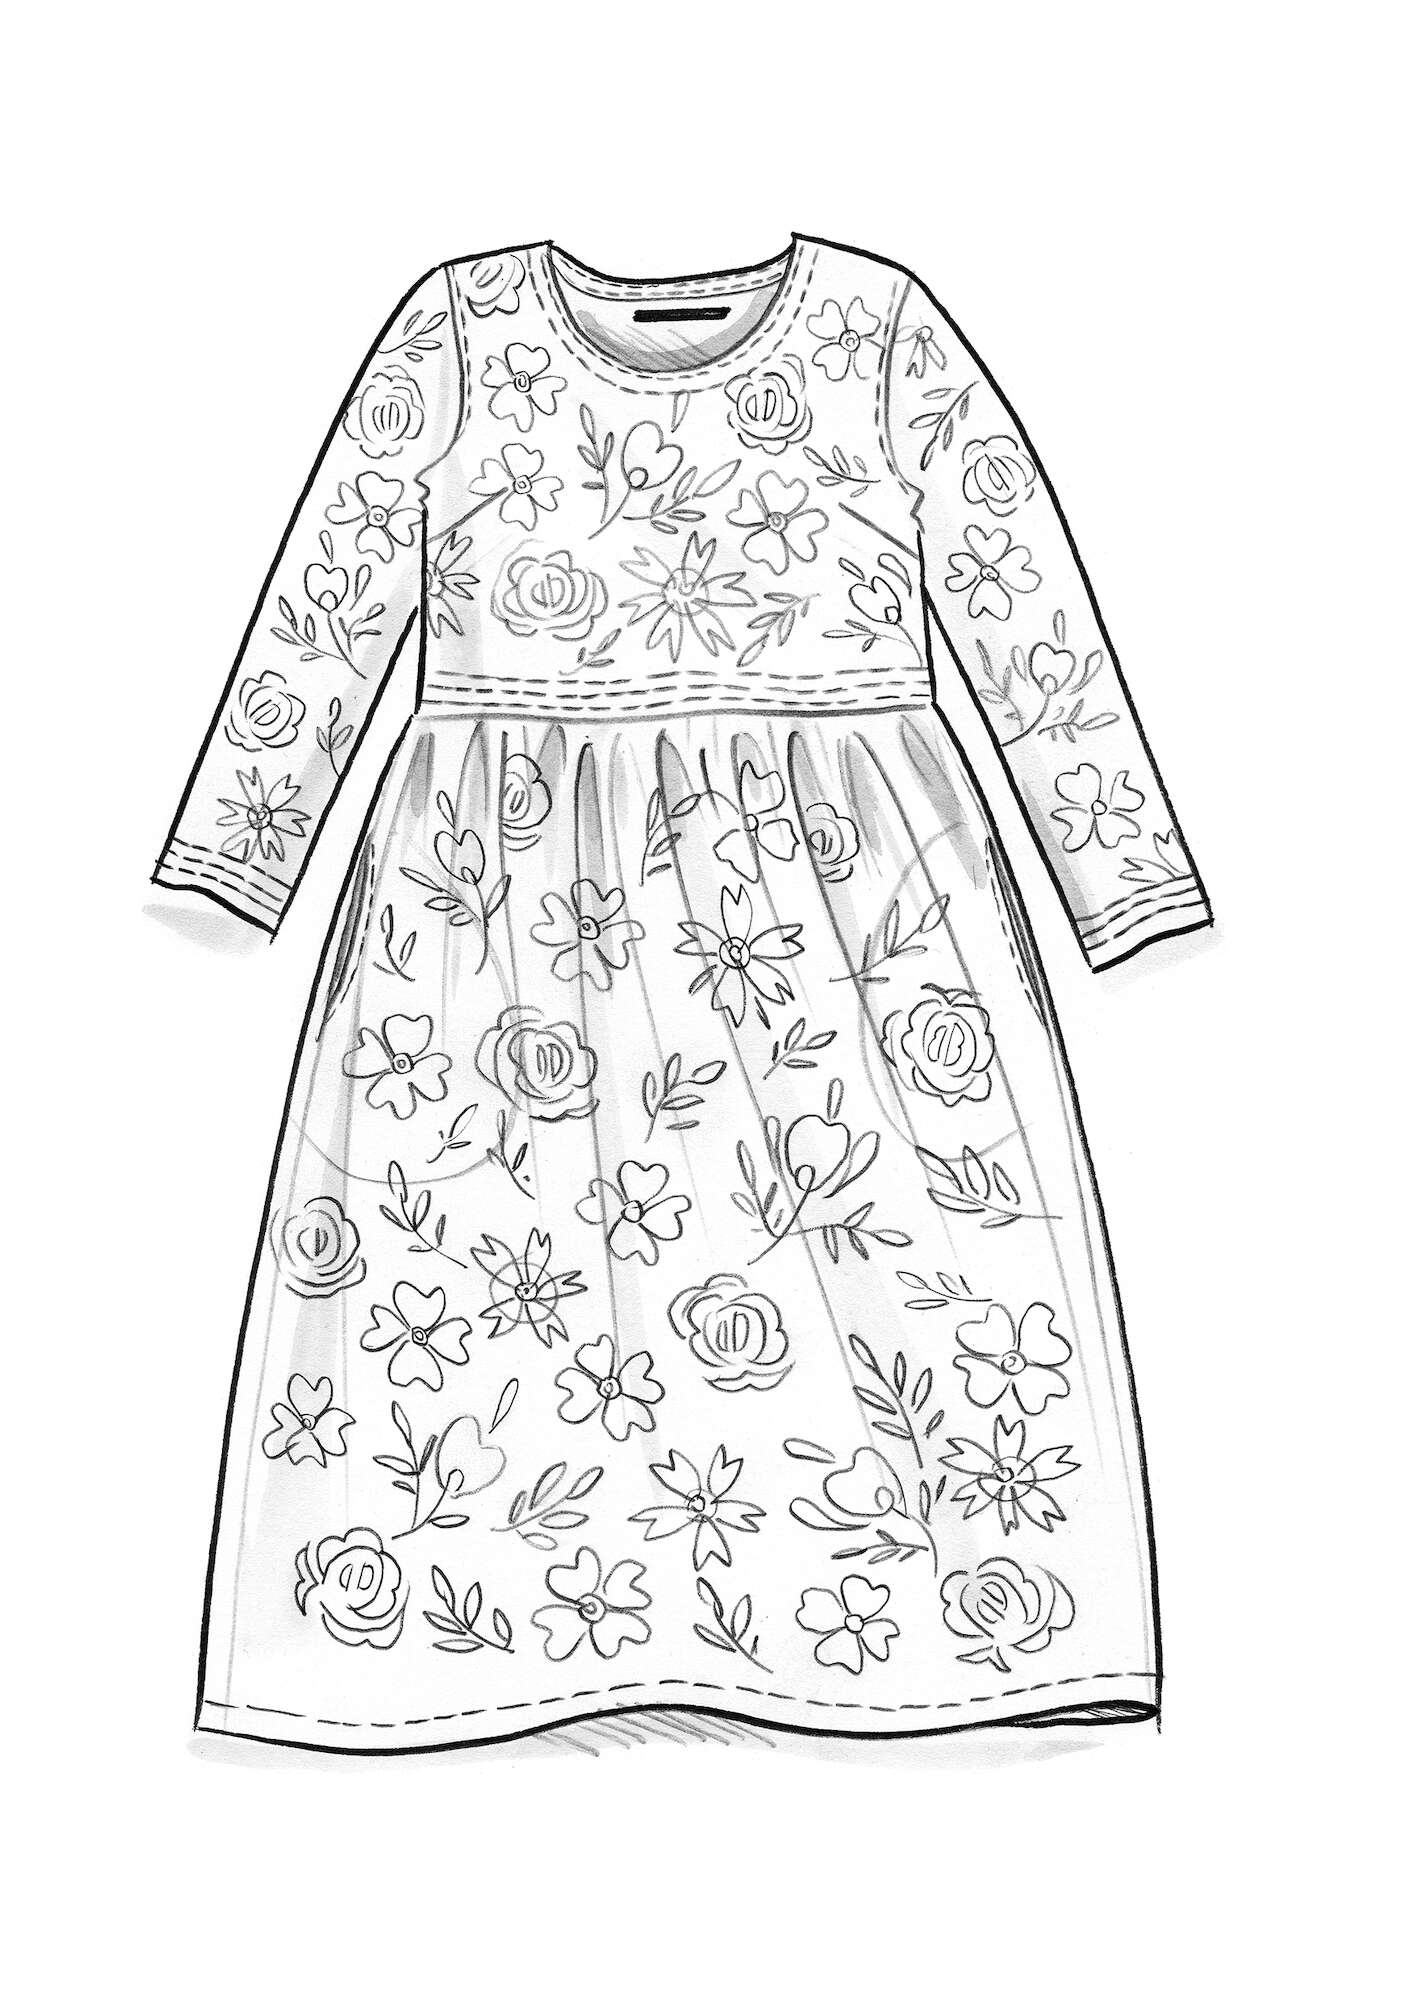 Vevd kjole «Lisbeth» i økologisk bomull svart